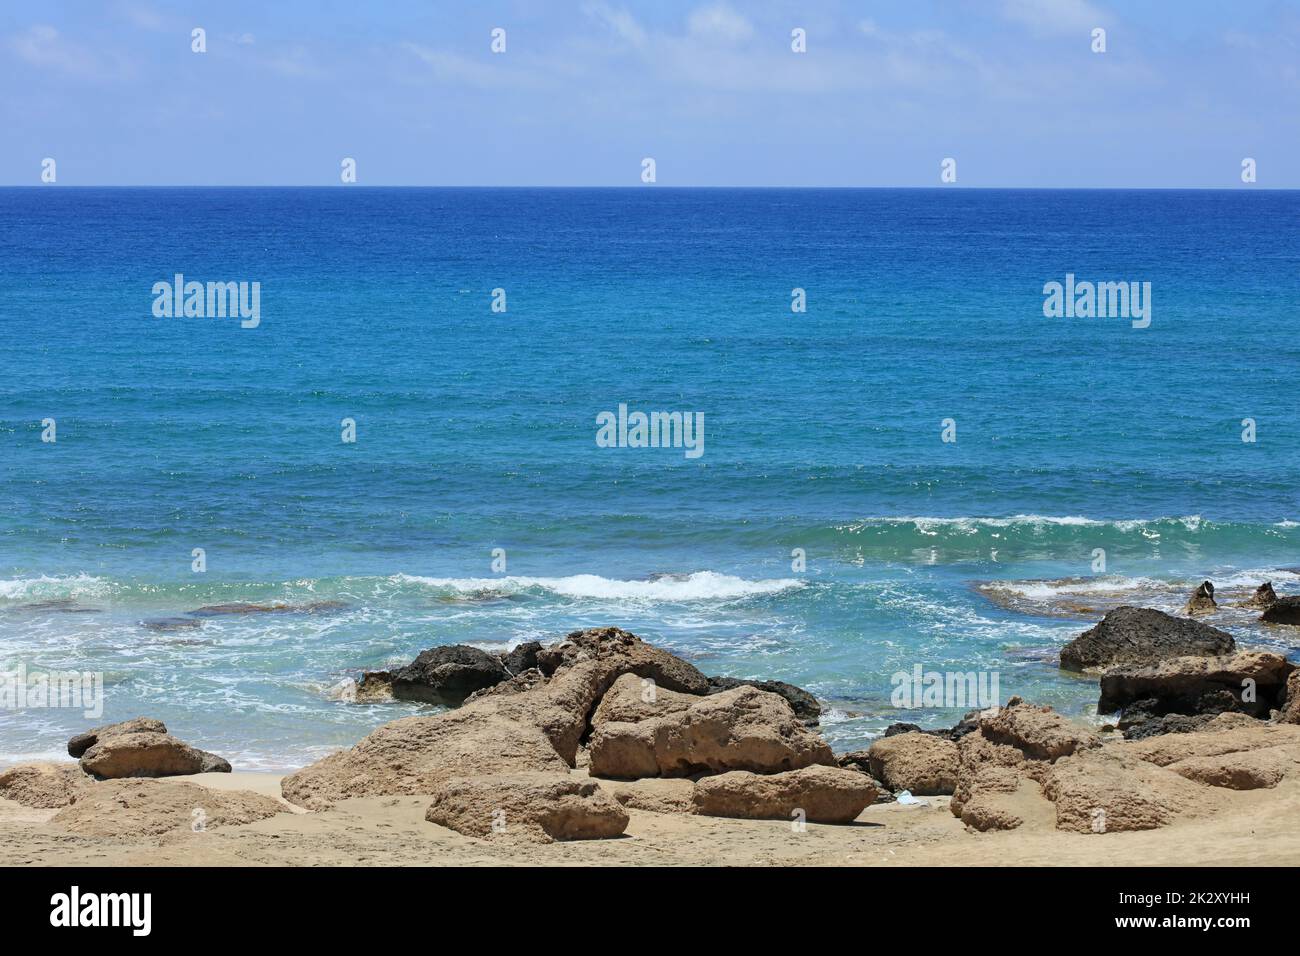 Falassarna spiaggia di sabbia rossa Kissamos Creta isola vacanze estive 2020 covid-19 corona virus stagione moderne stampe di alta qualità Foto Stock